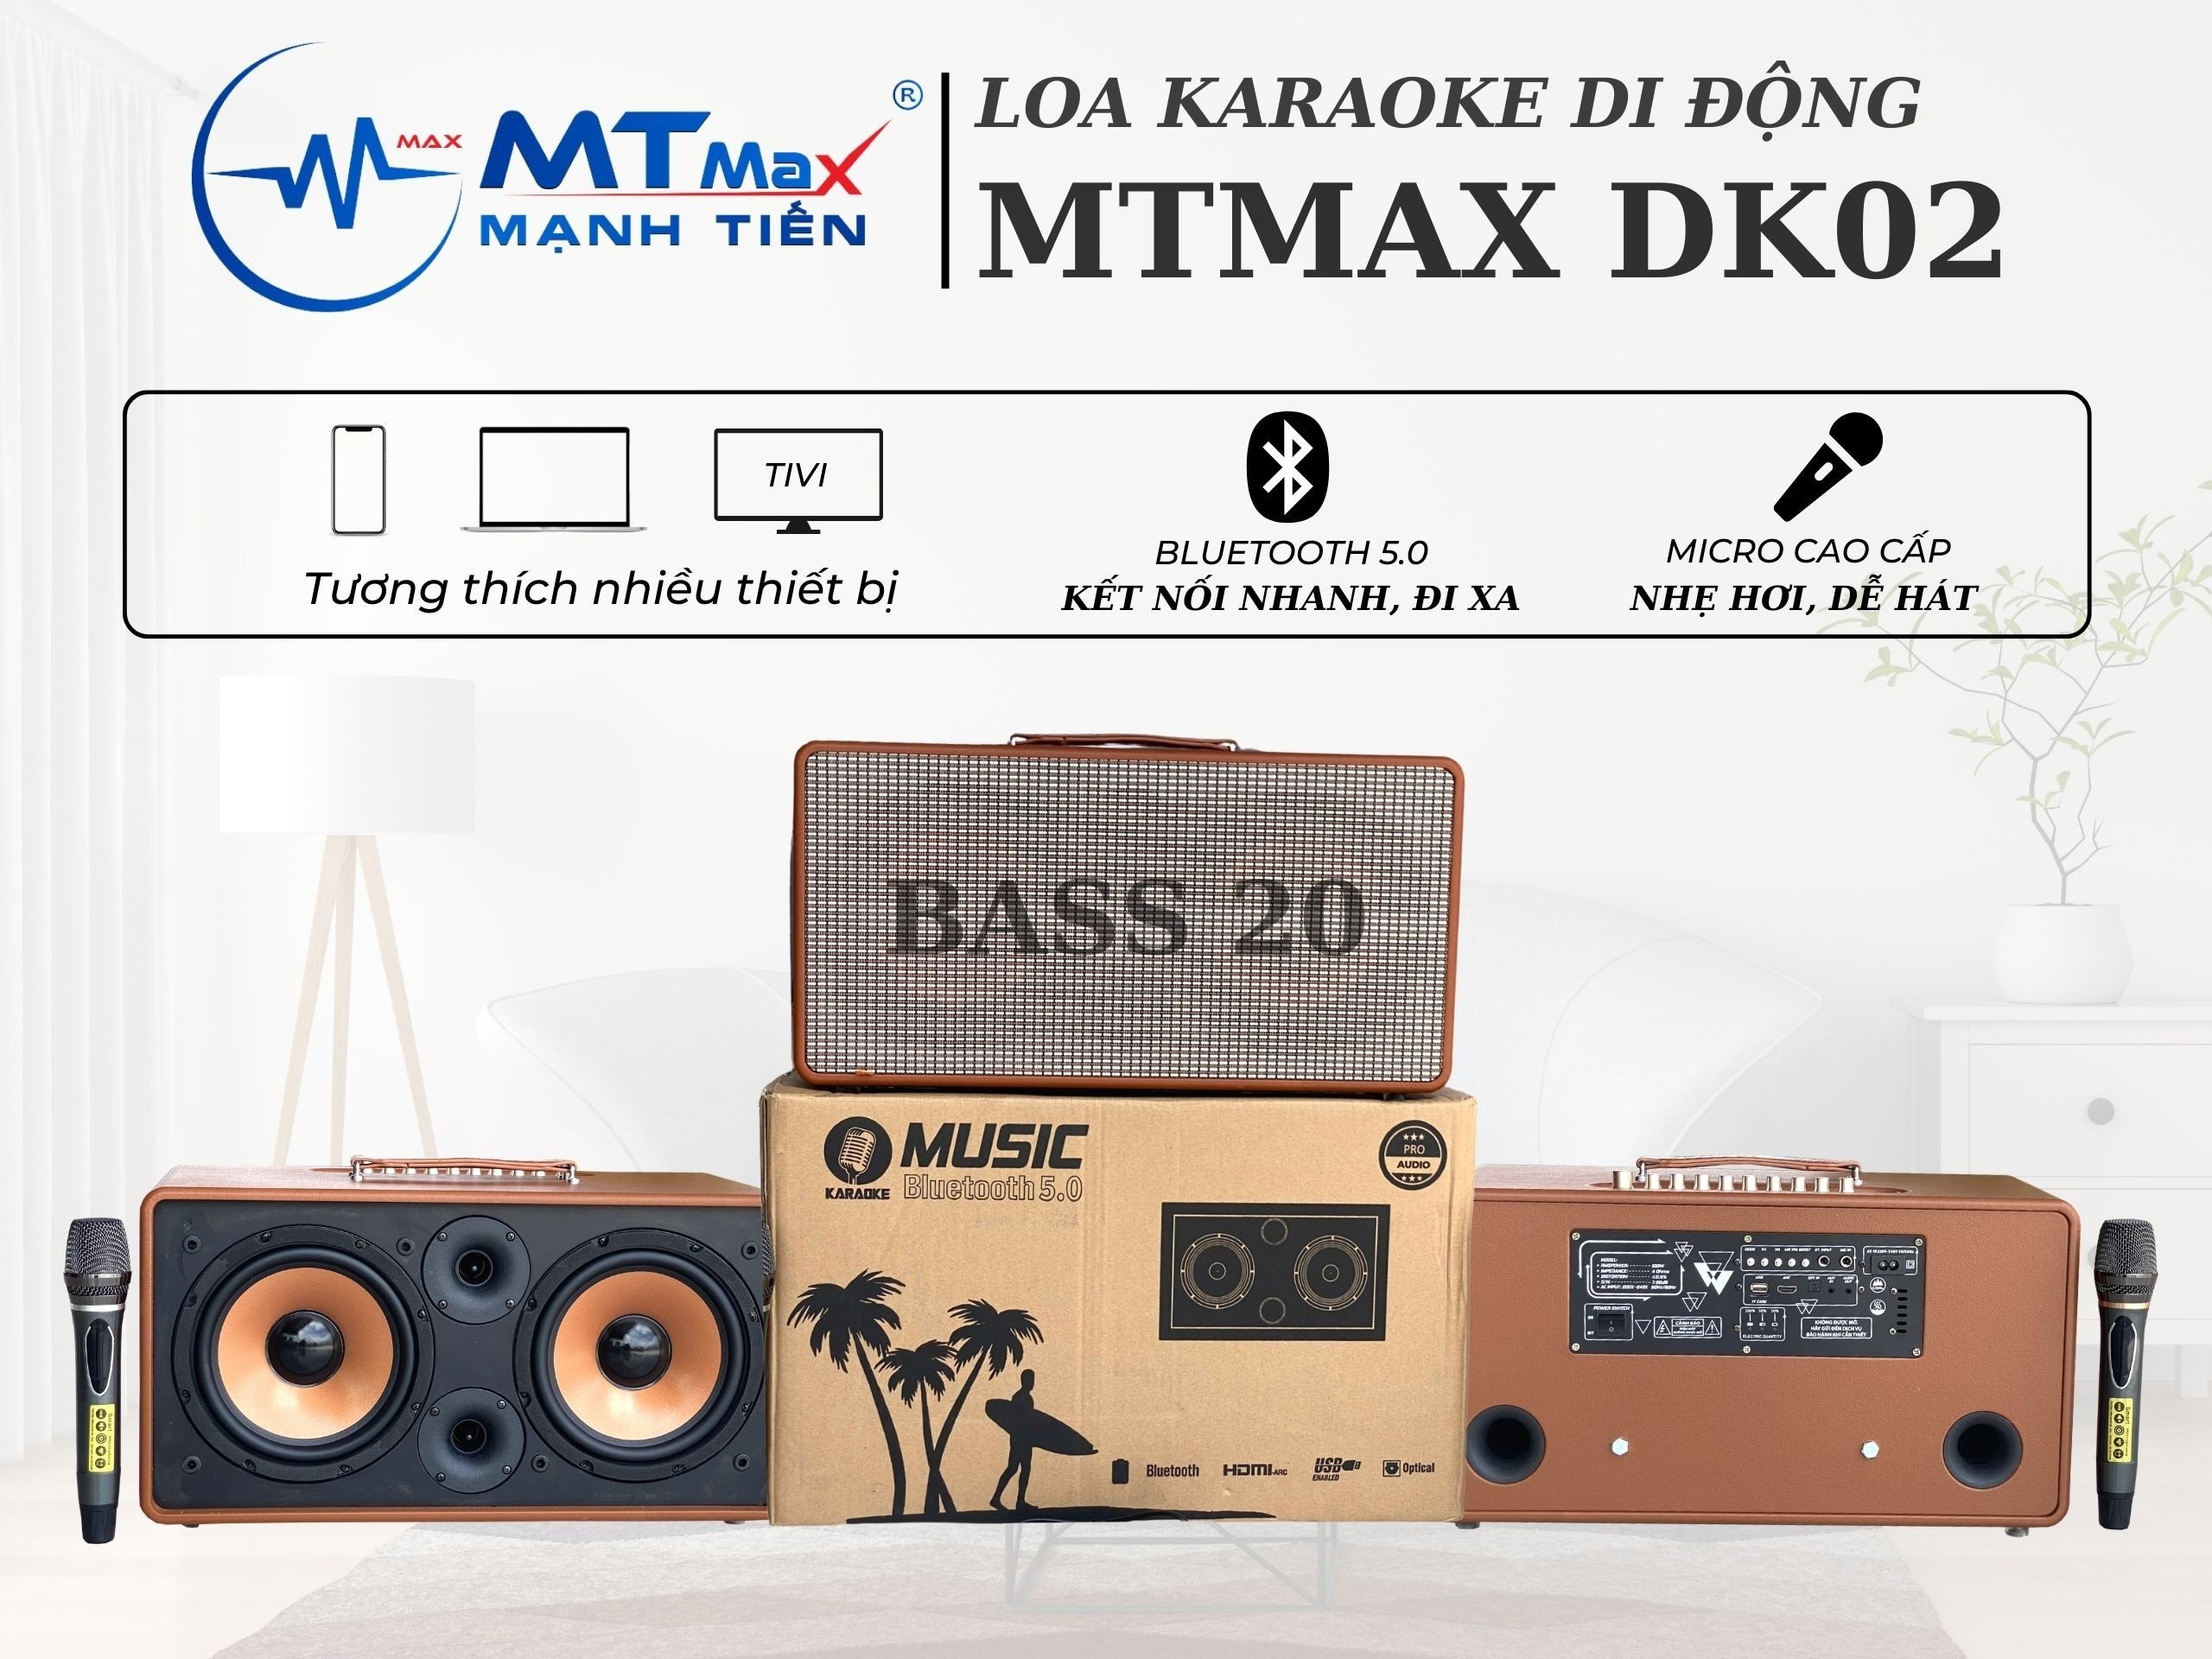 Loa Di Động MTMAX DK02 – Công Suất Lớn, Bass Đôi, Kèm 2 Micro Cao Cấp  Âm Thanh Mạnh Mẽ, Sống Động Hàng Chính Hãng